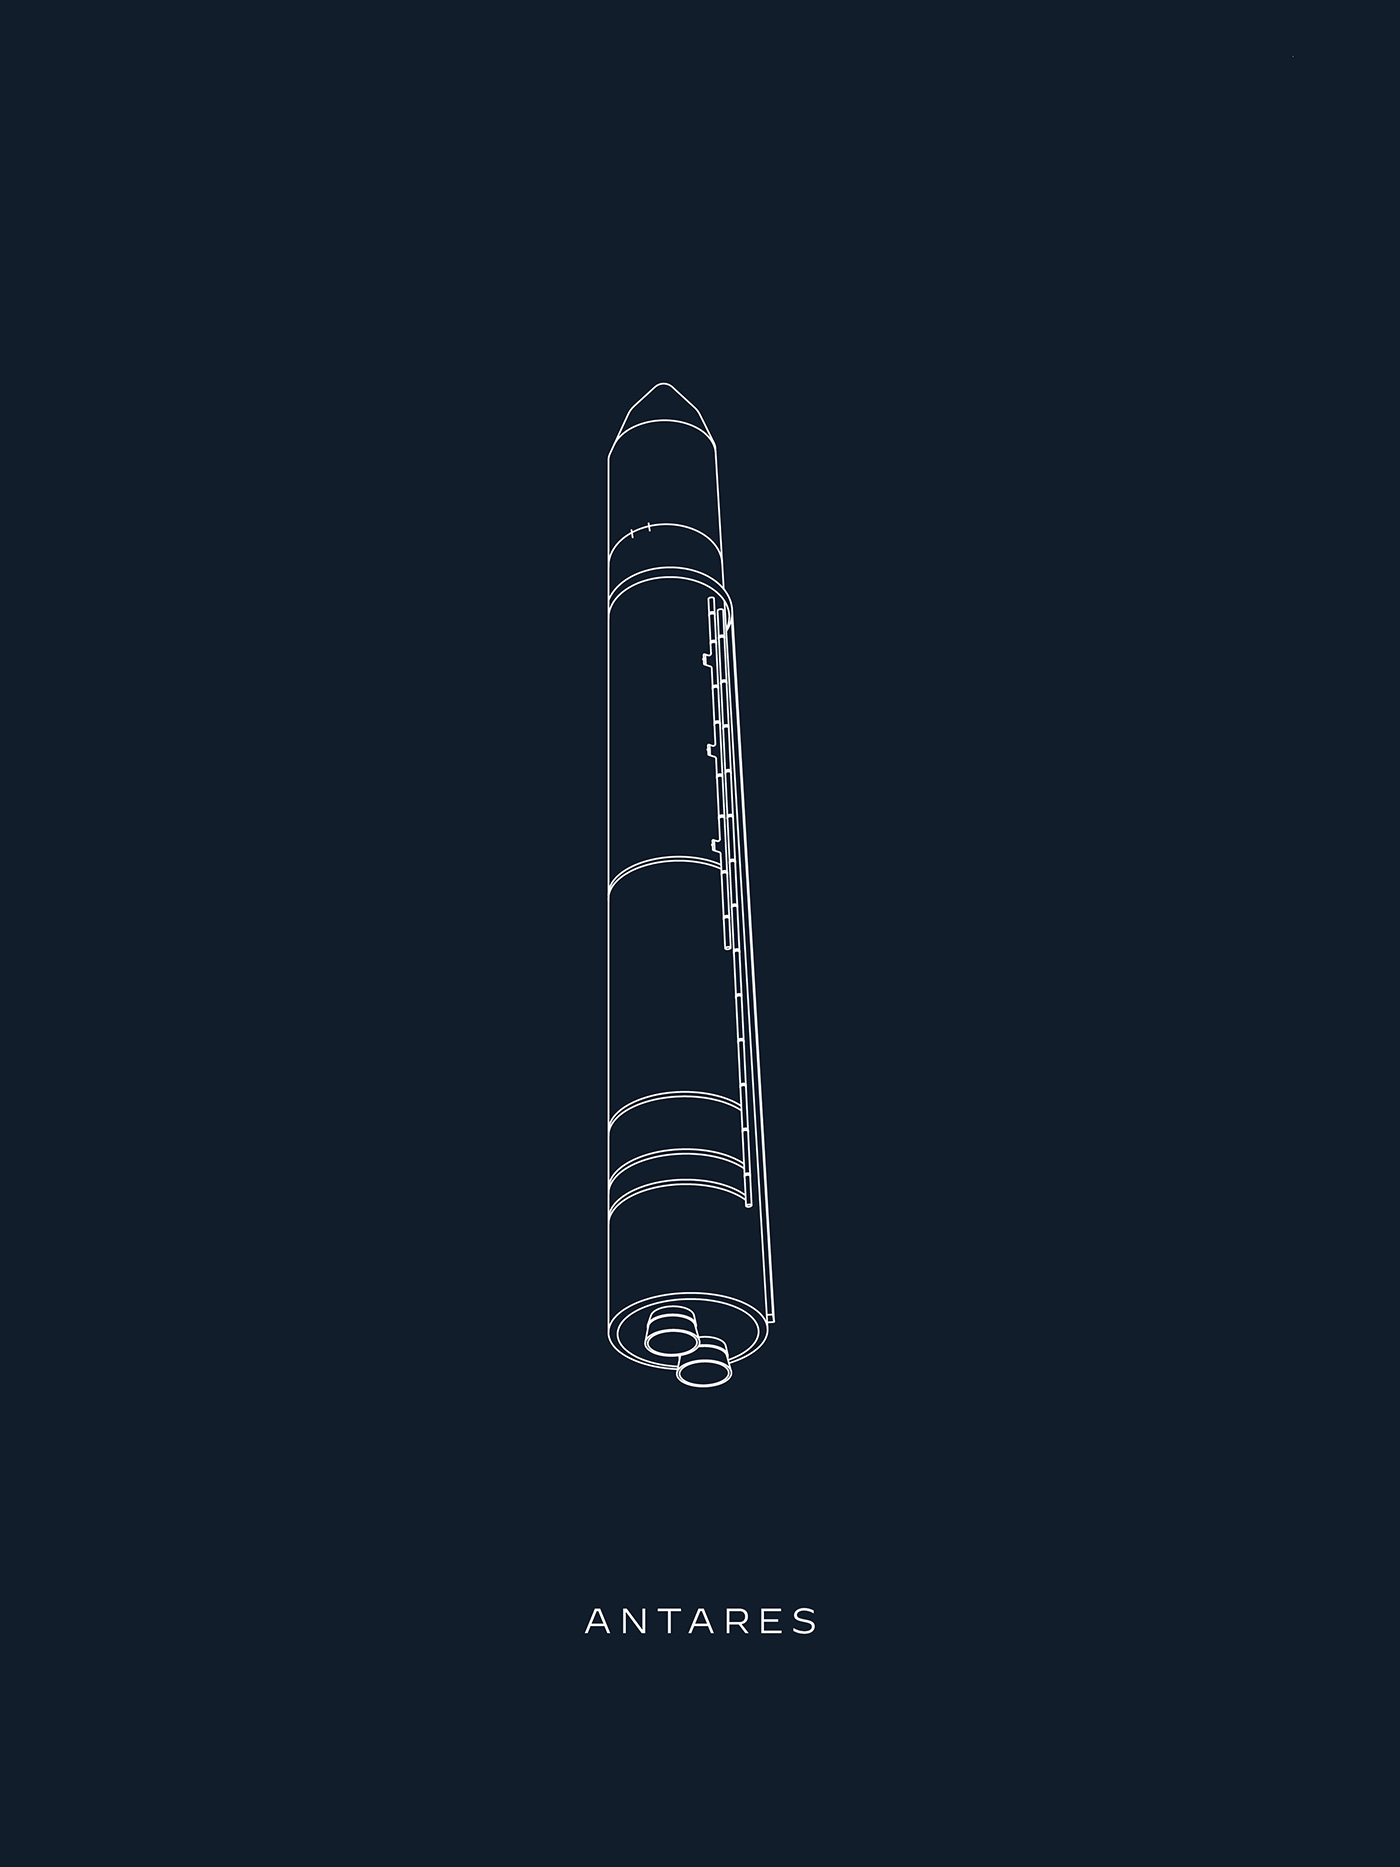 illustration of antares rocket